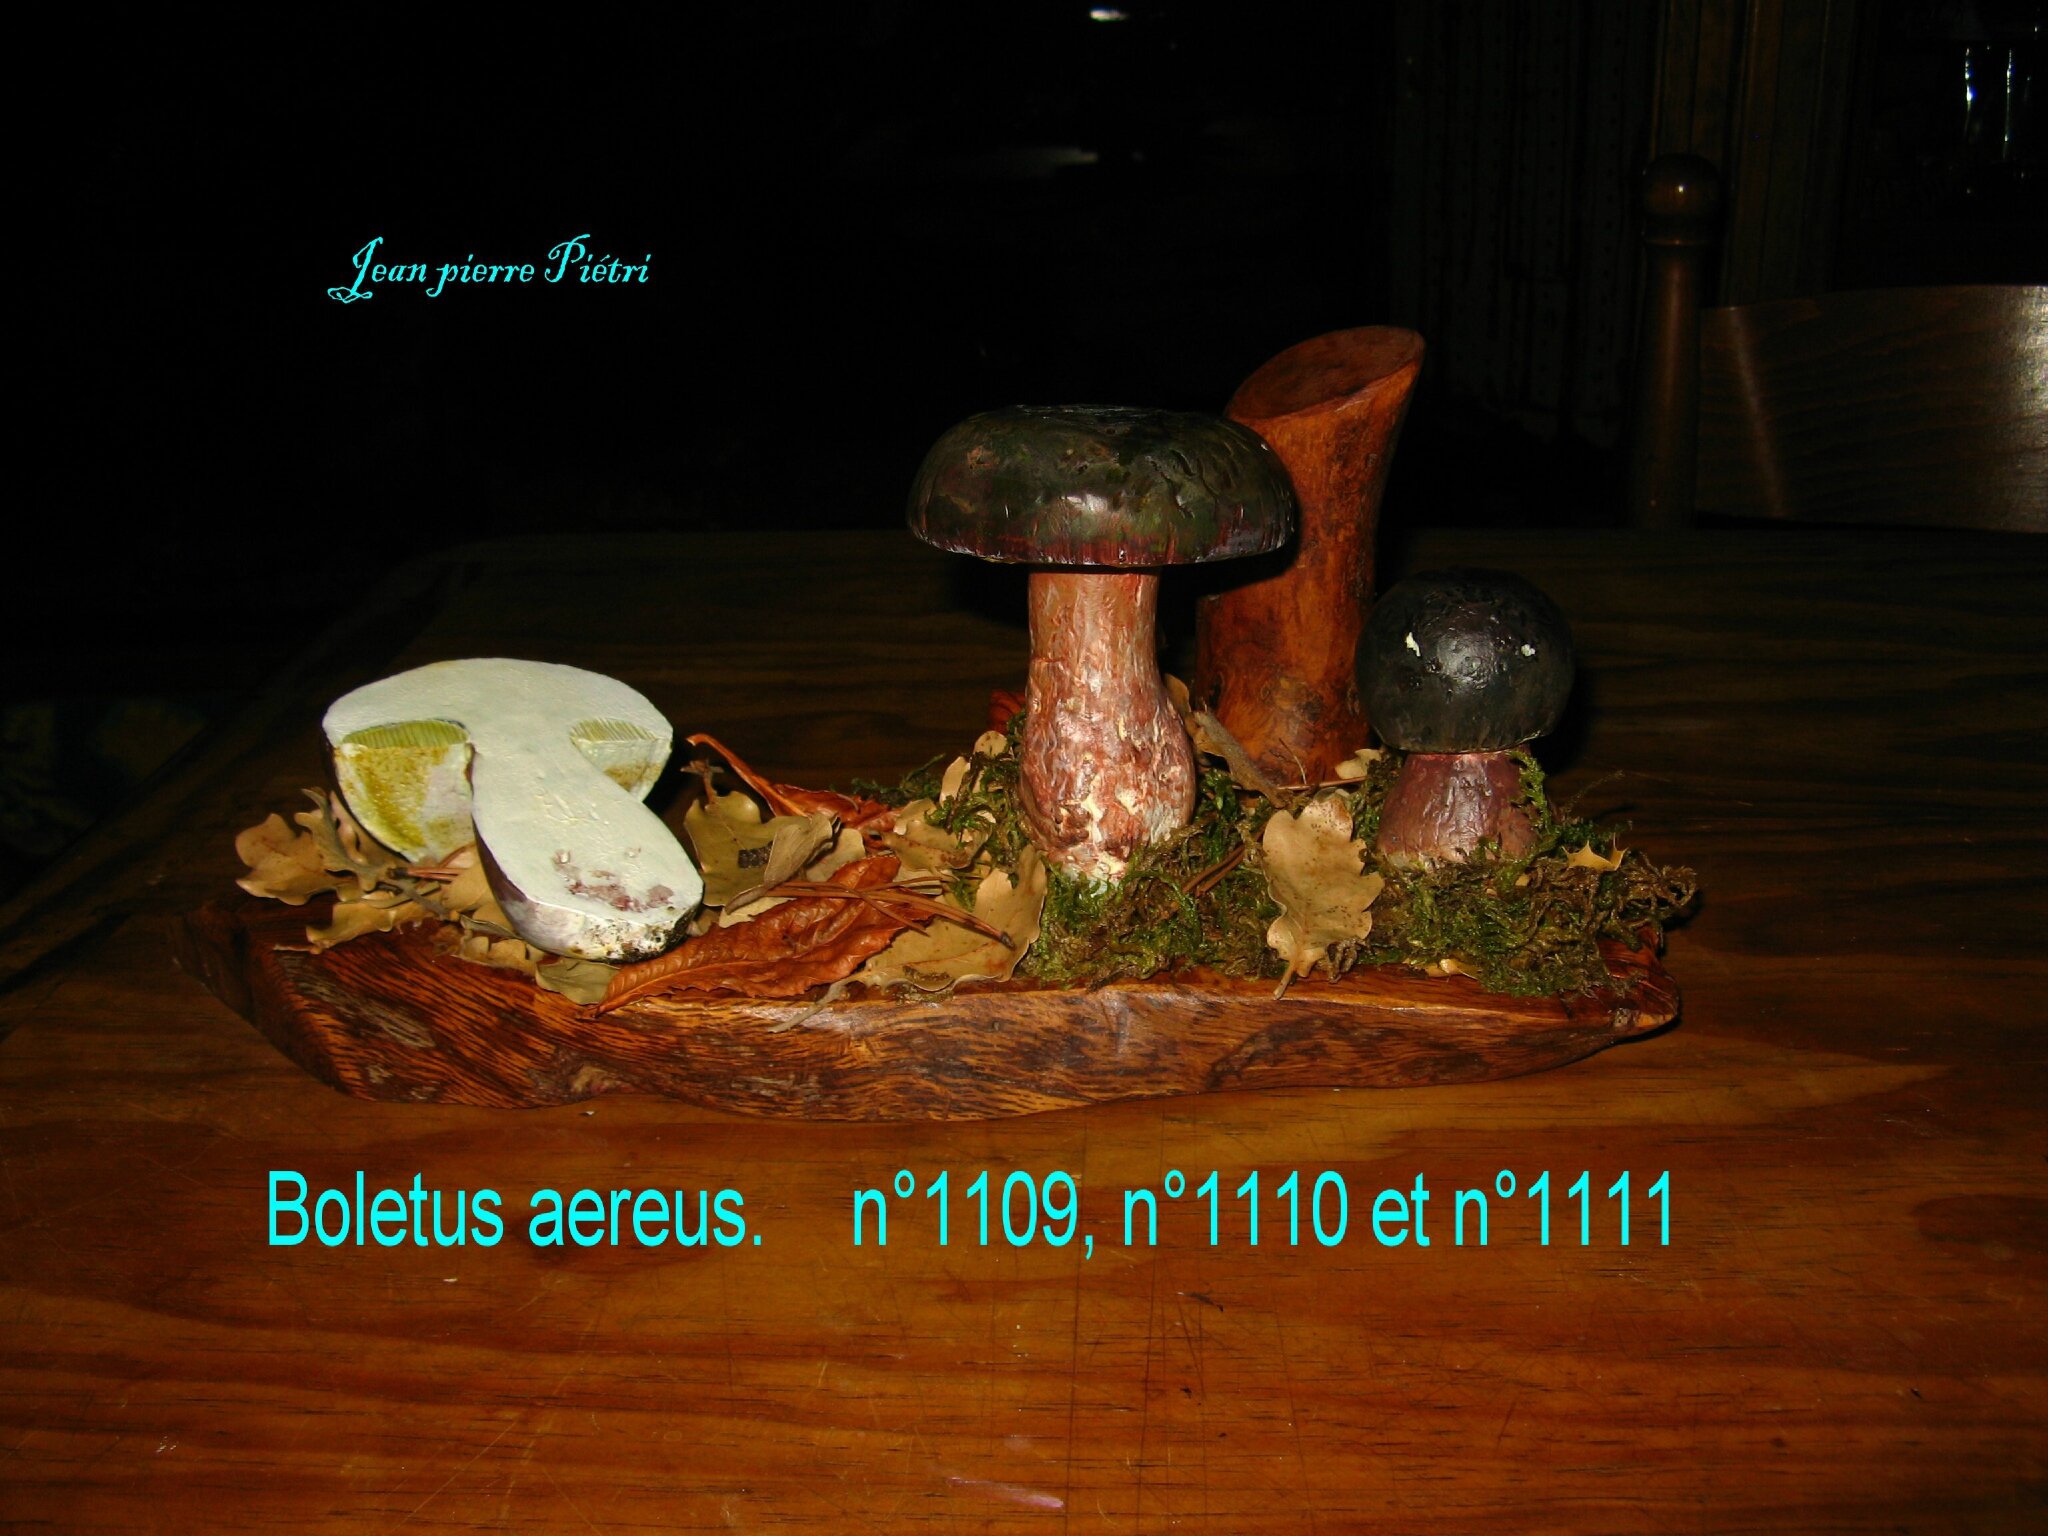 Boletus aereus n°1109, n°1110, n°1111